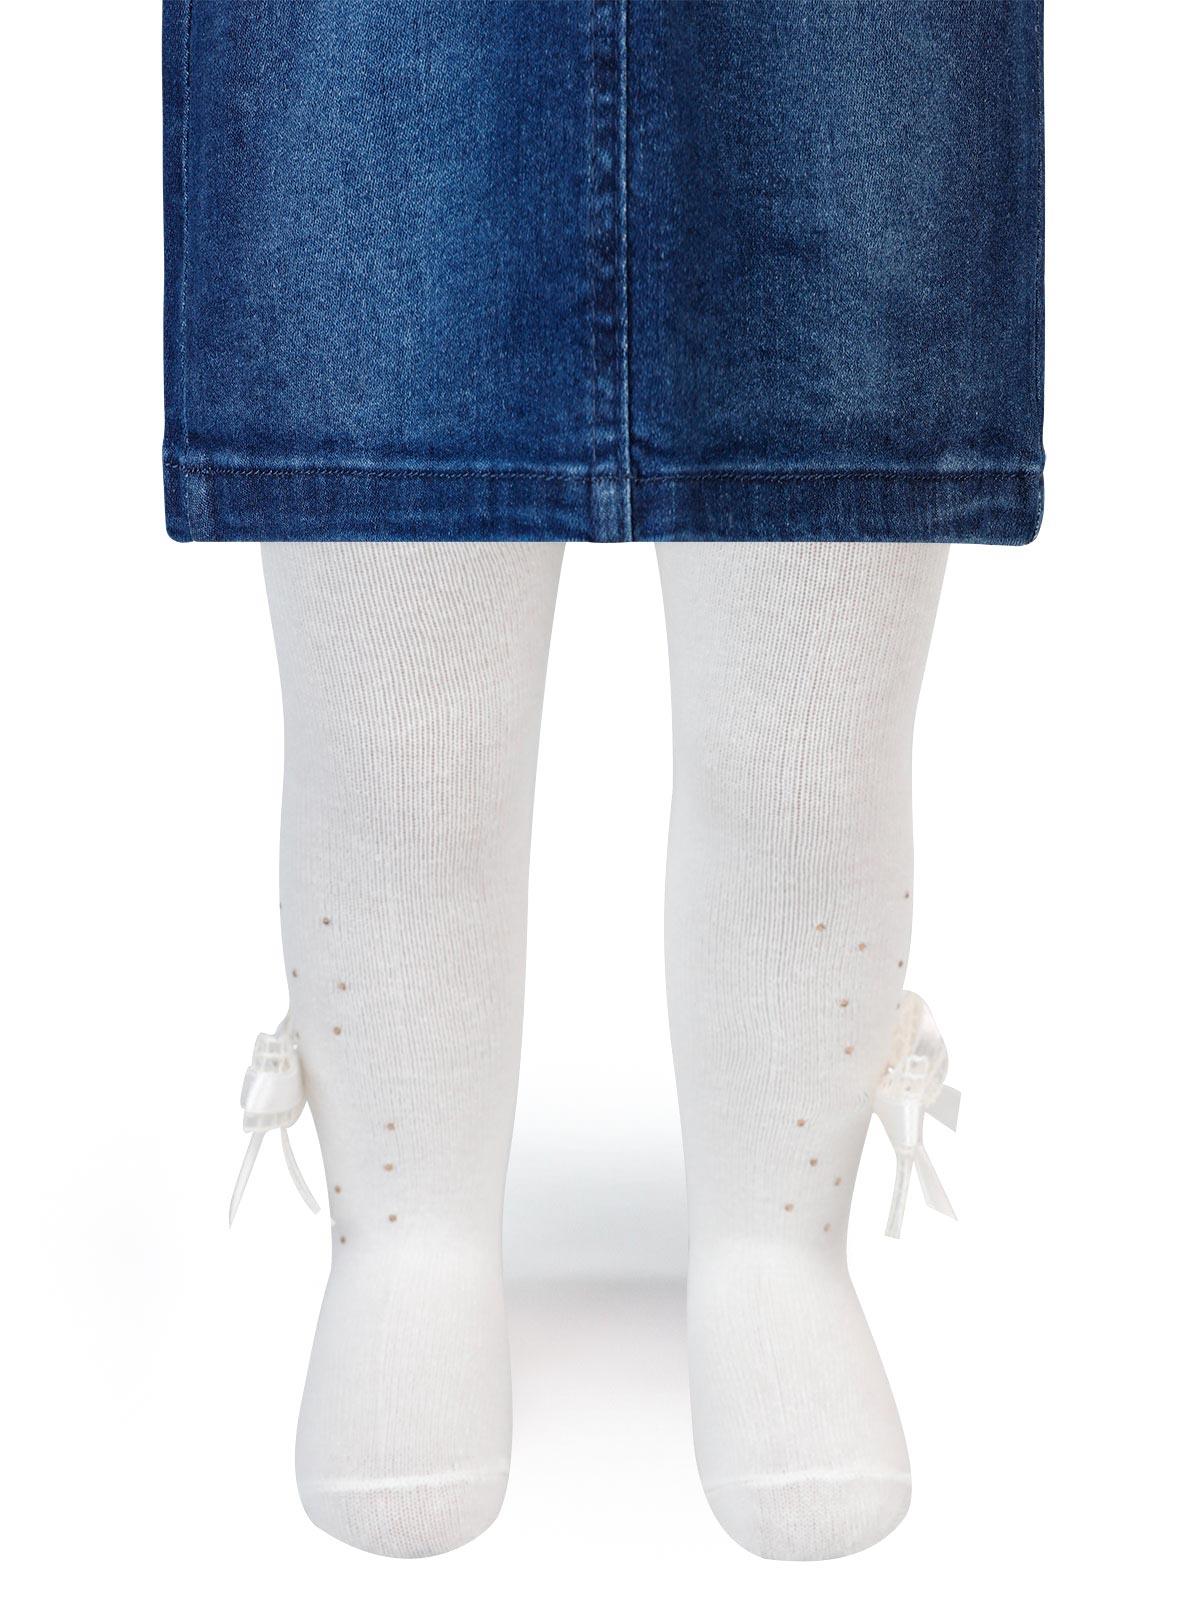 Artı Kız Bebek Aksesuarlı Külotlu Çorap 0-12 Ay Ekru